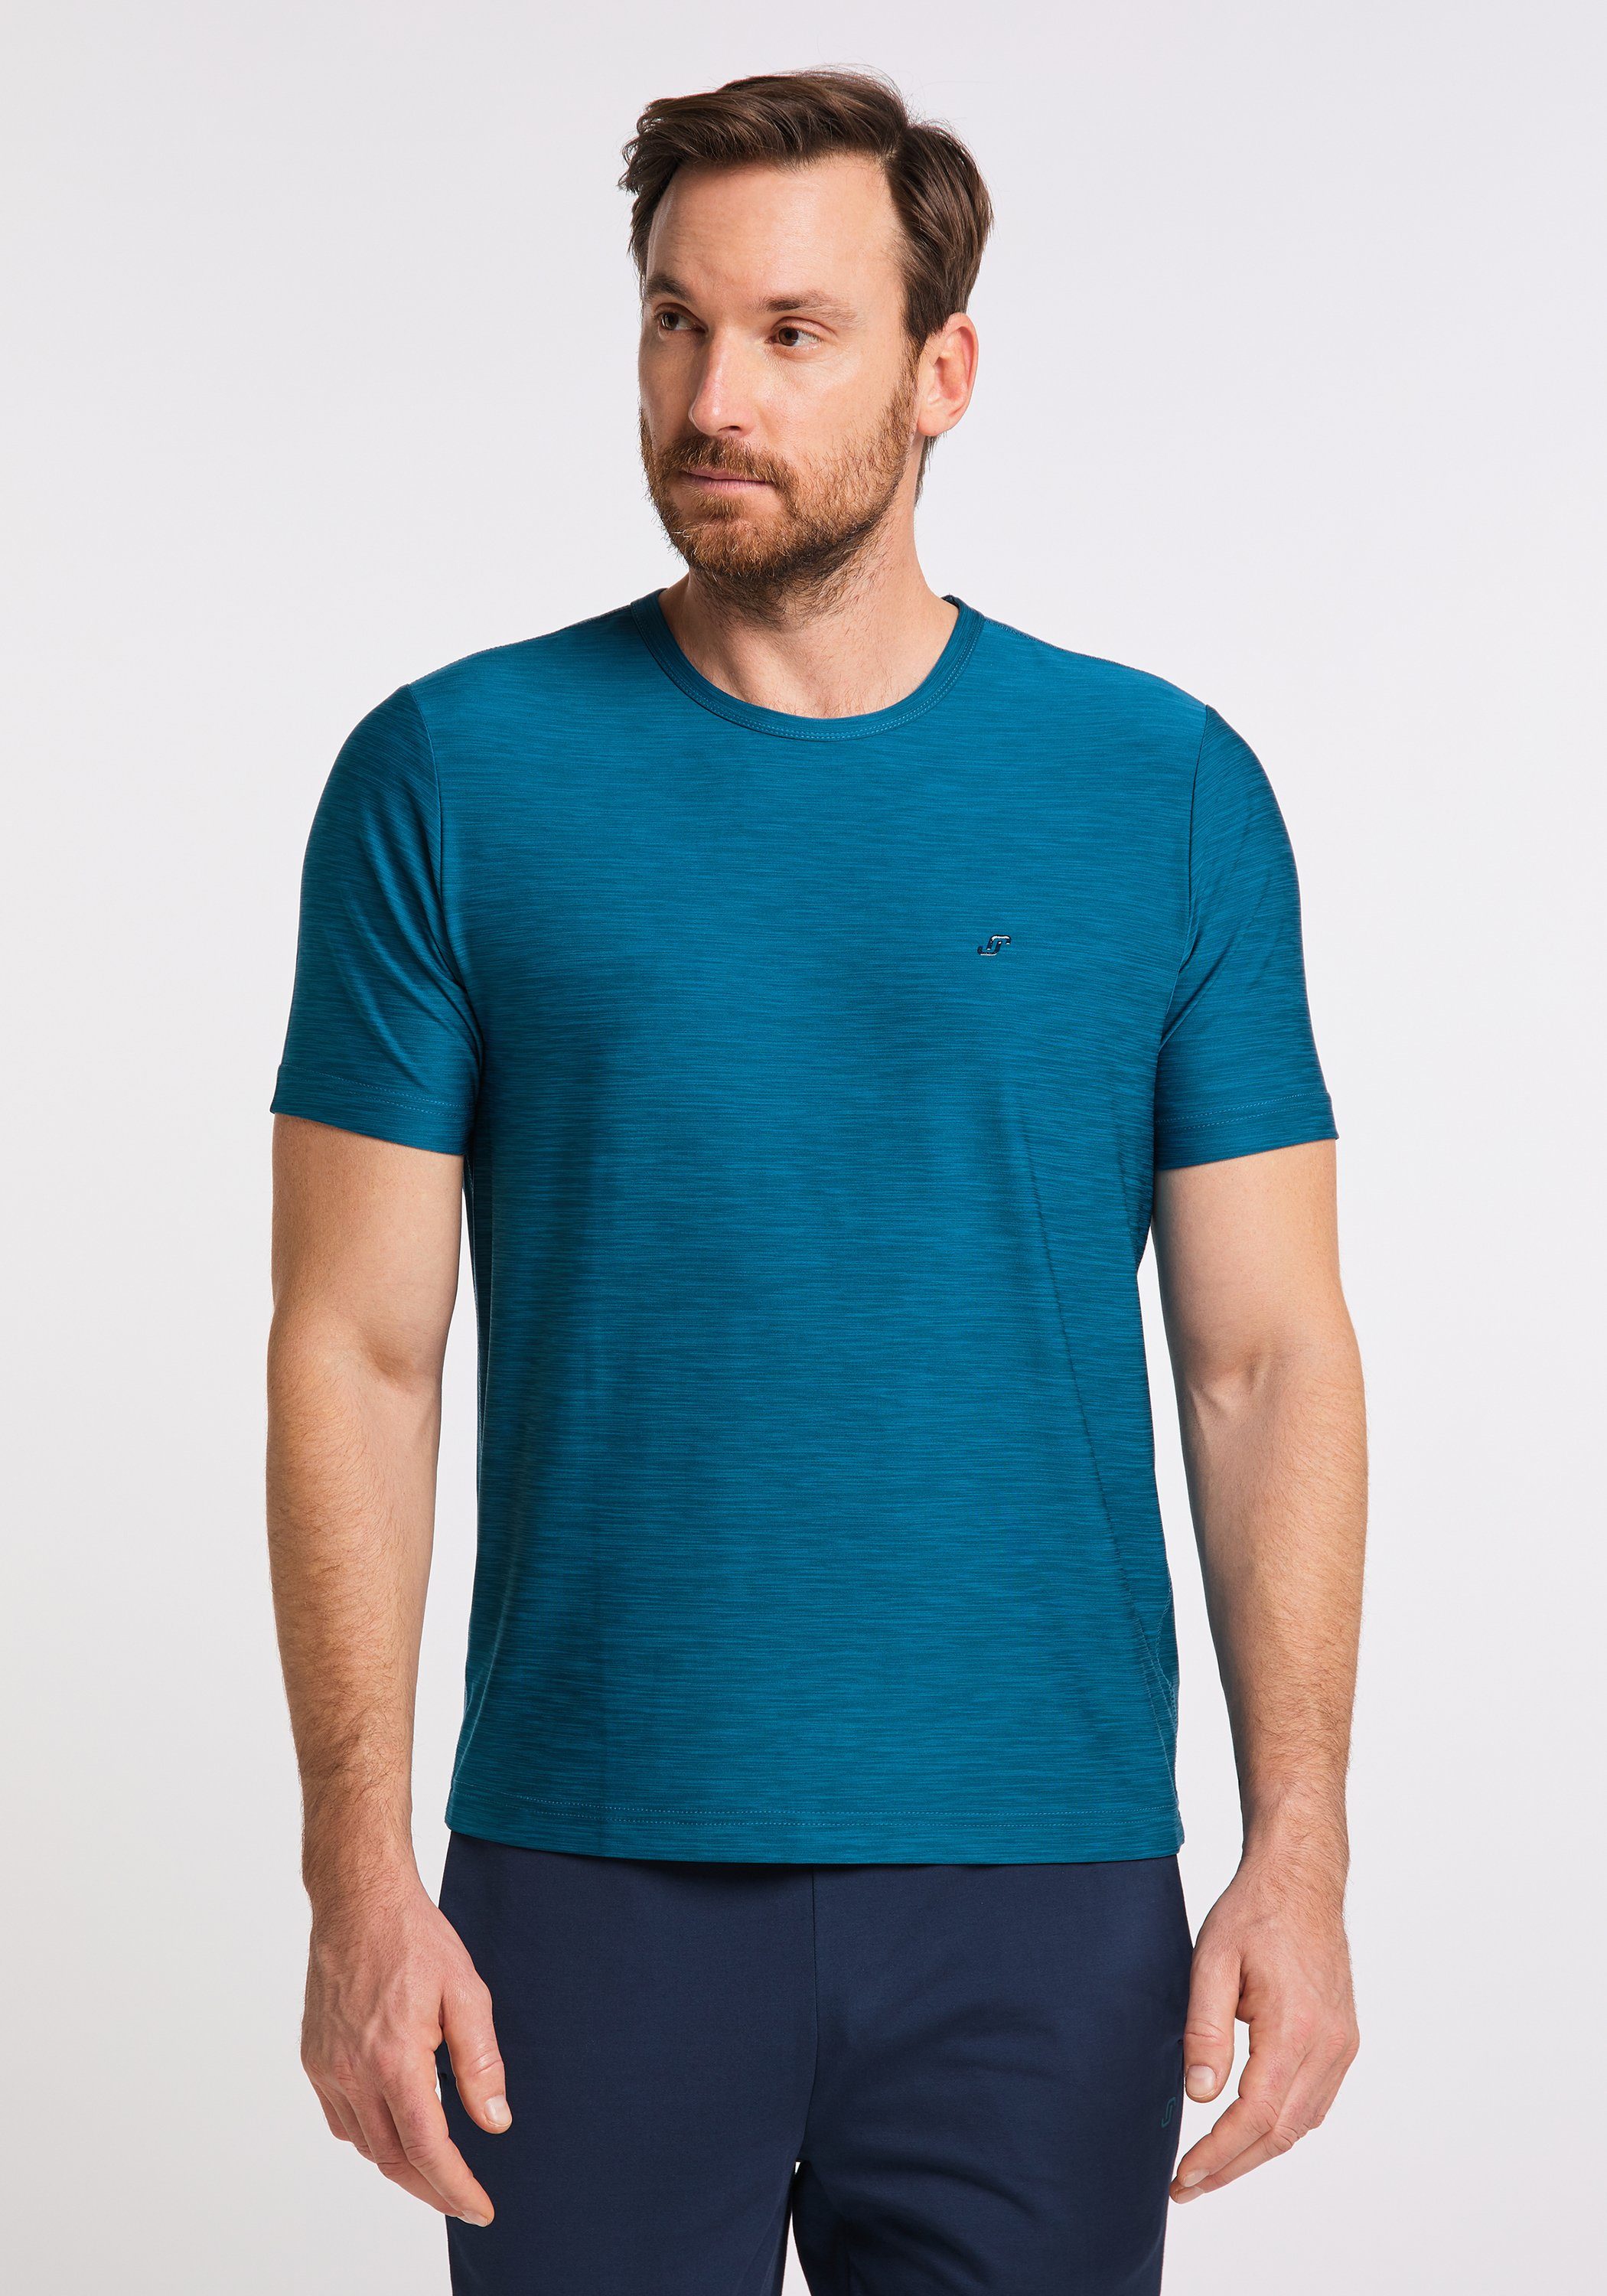 & deep Joy Sportswear T-Shirt melange FUN VITUS T-Shirt turquoise JOY